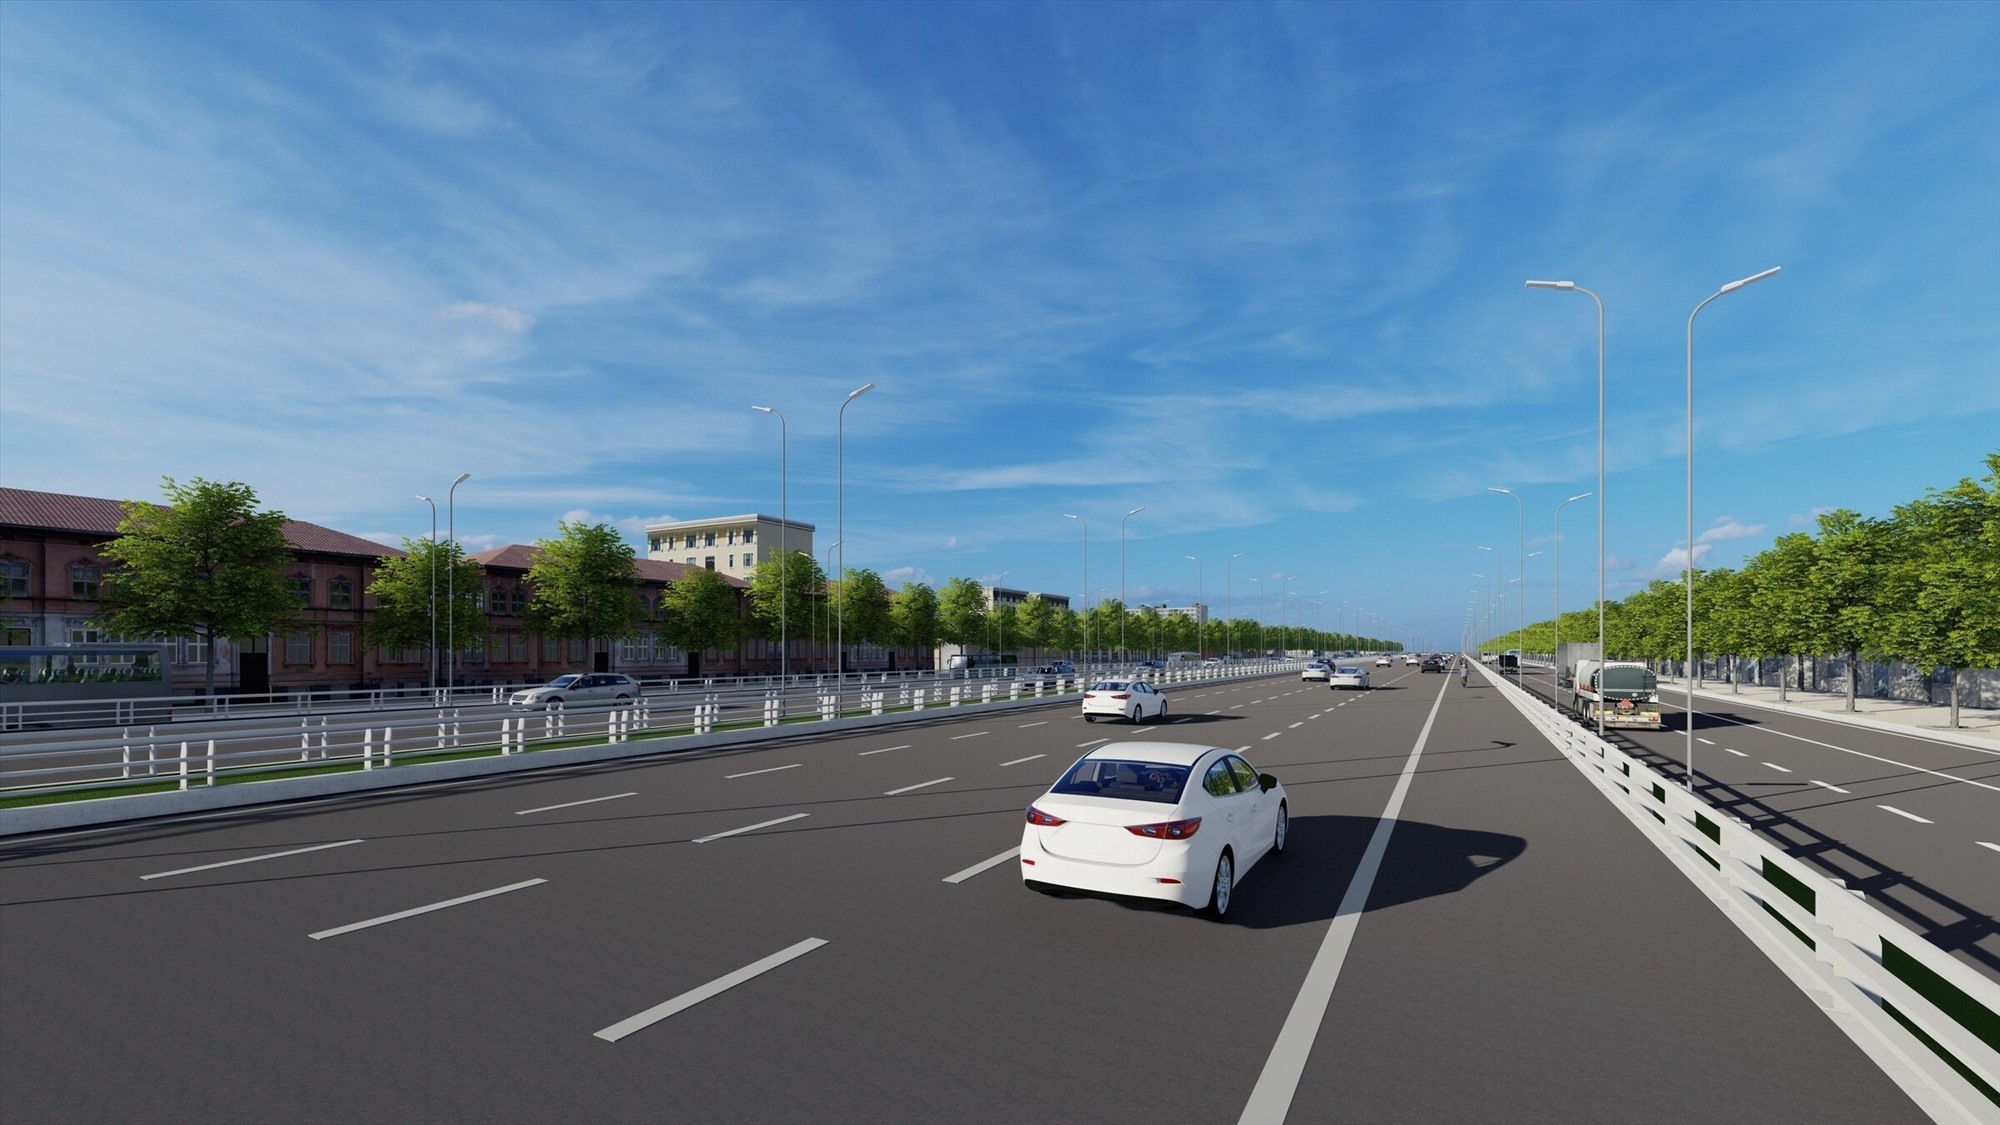 Dự án đầu tư xây dựng đường Vành đai 4 Thành phố Hồ Chí Minh được bổ sung vào danh mục Dự án quan trọng quốc gia, trọng điểm ngành Giao thông vận tải